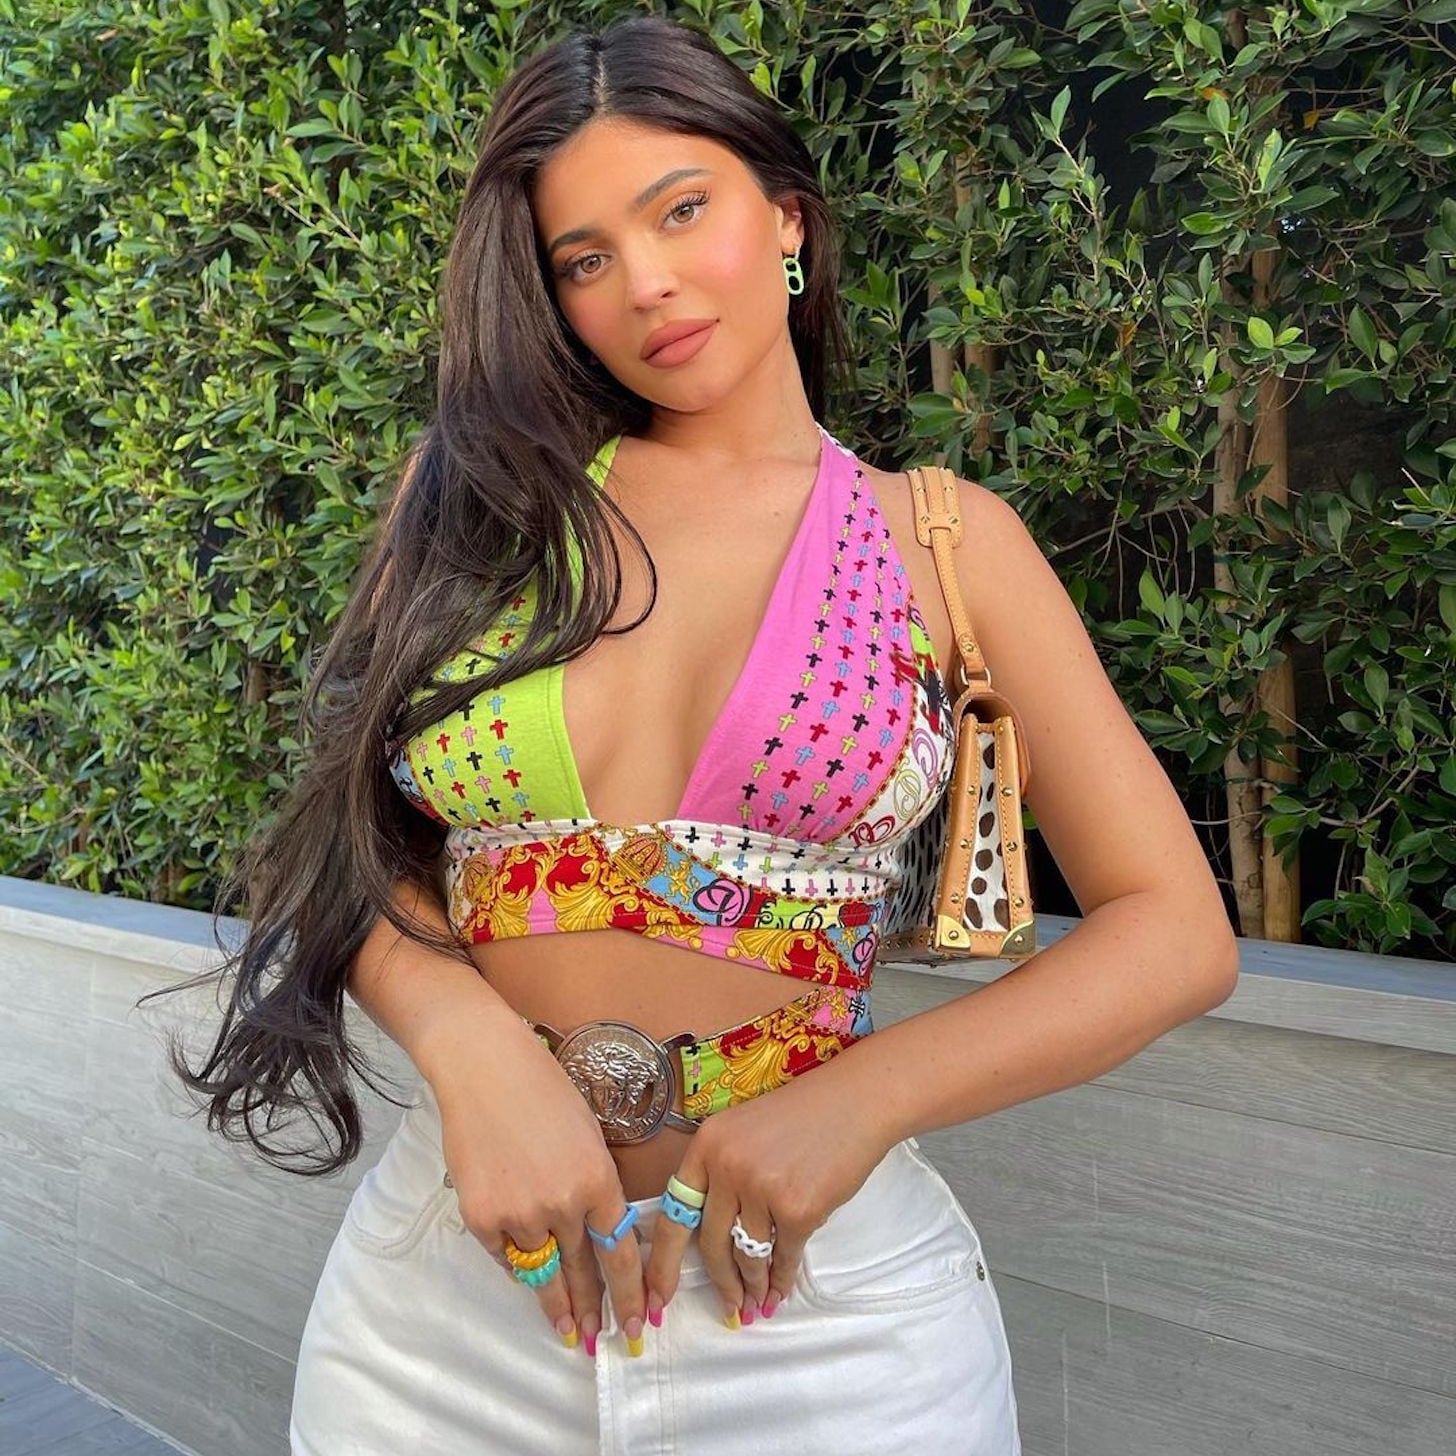 Kylie Jenner S 2 Toned Vintage Versace Top On Instagram Popsugar Fashion